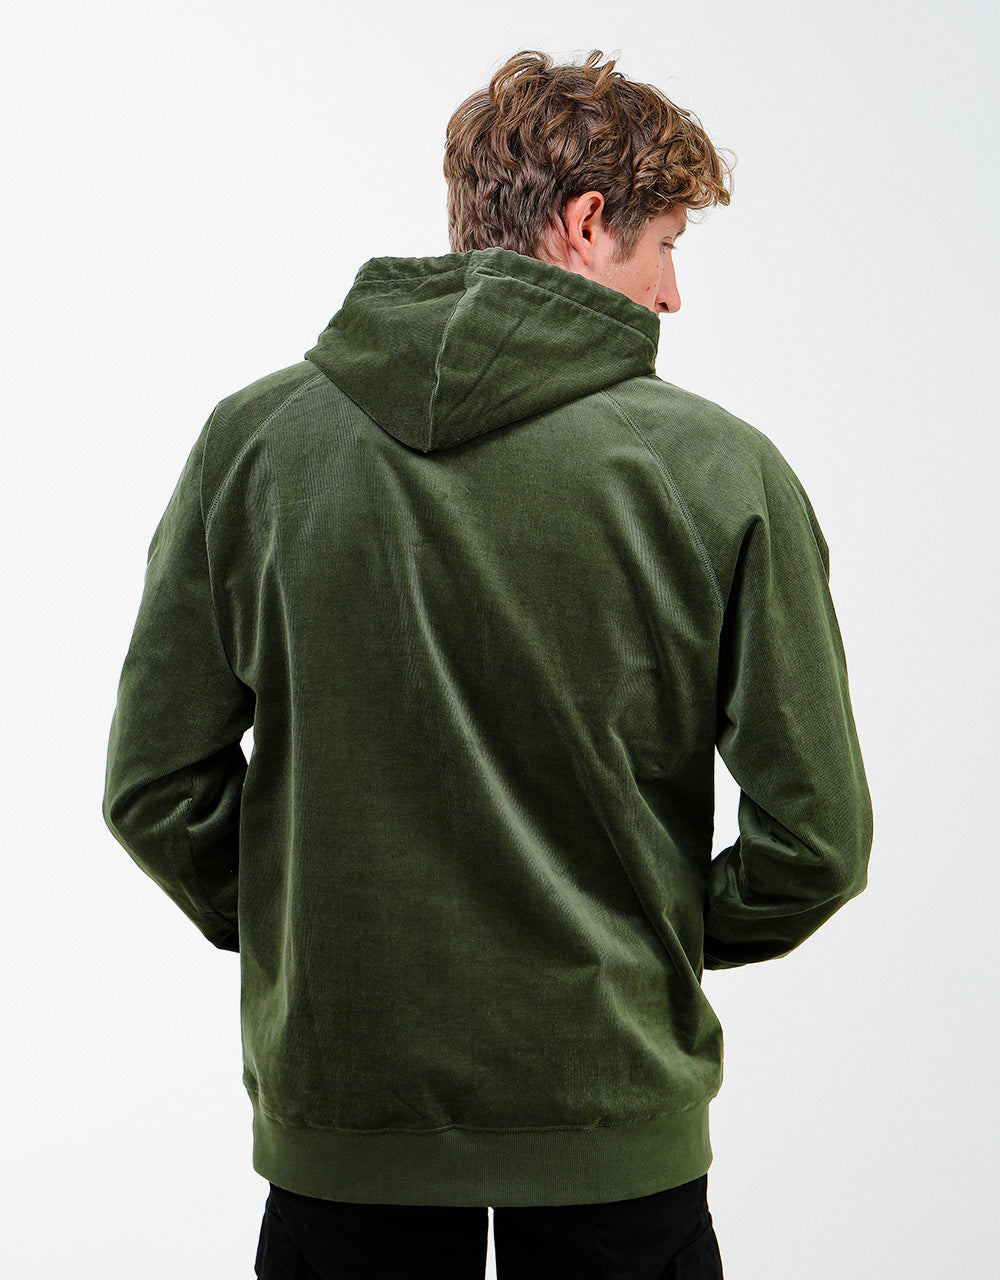 Carhartt WIP Hooded Cord Sweatshirt - Dollar Green/Gold